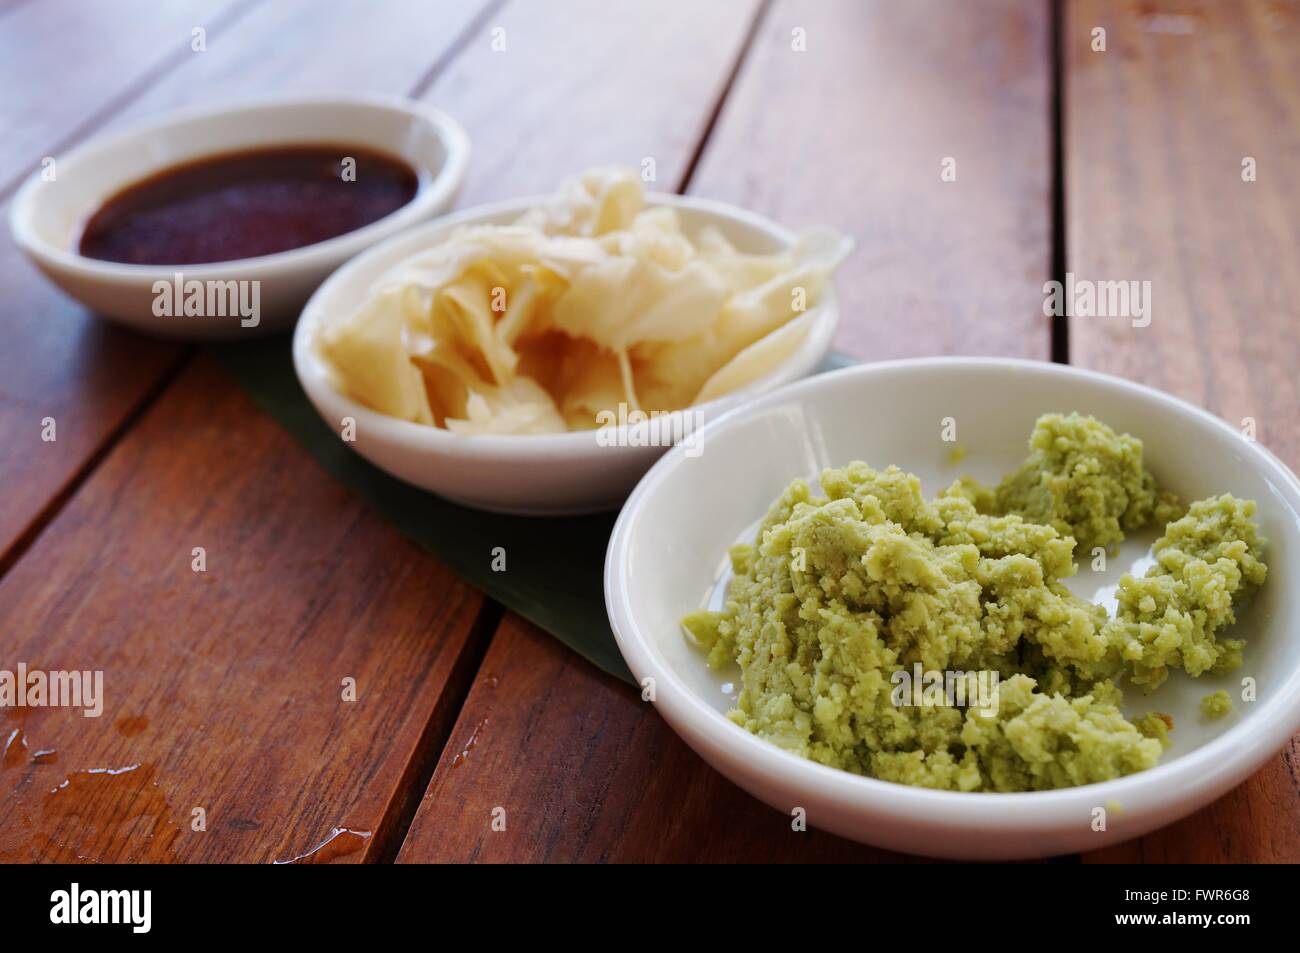 Piatti di verde wasabi, zenzero sott'aceto e salsa di soia condimenti giapponesi Foto Stock